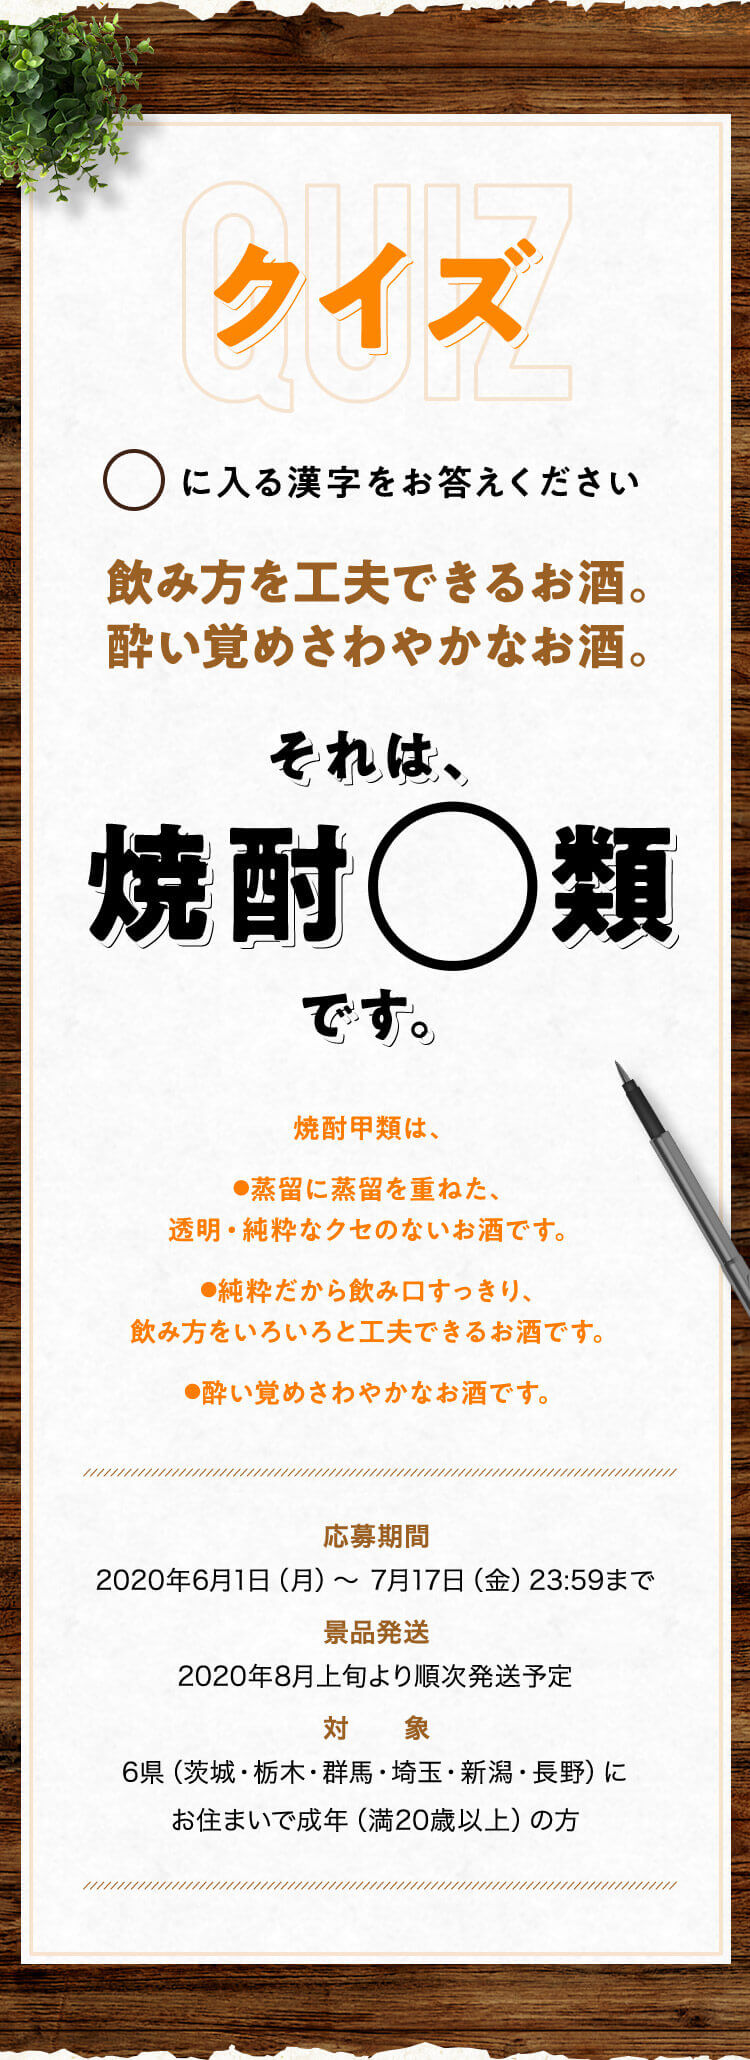 クイズ ◯に入る漢字をお答えください。飲み方を工夫できるお酒。酔い覚めさわやかなお酒。それは焼酎◯類です。